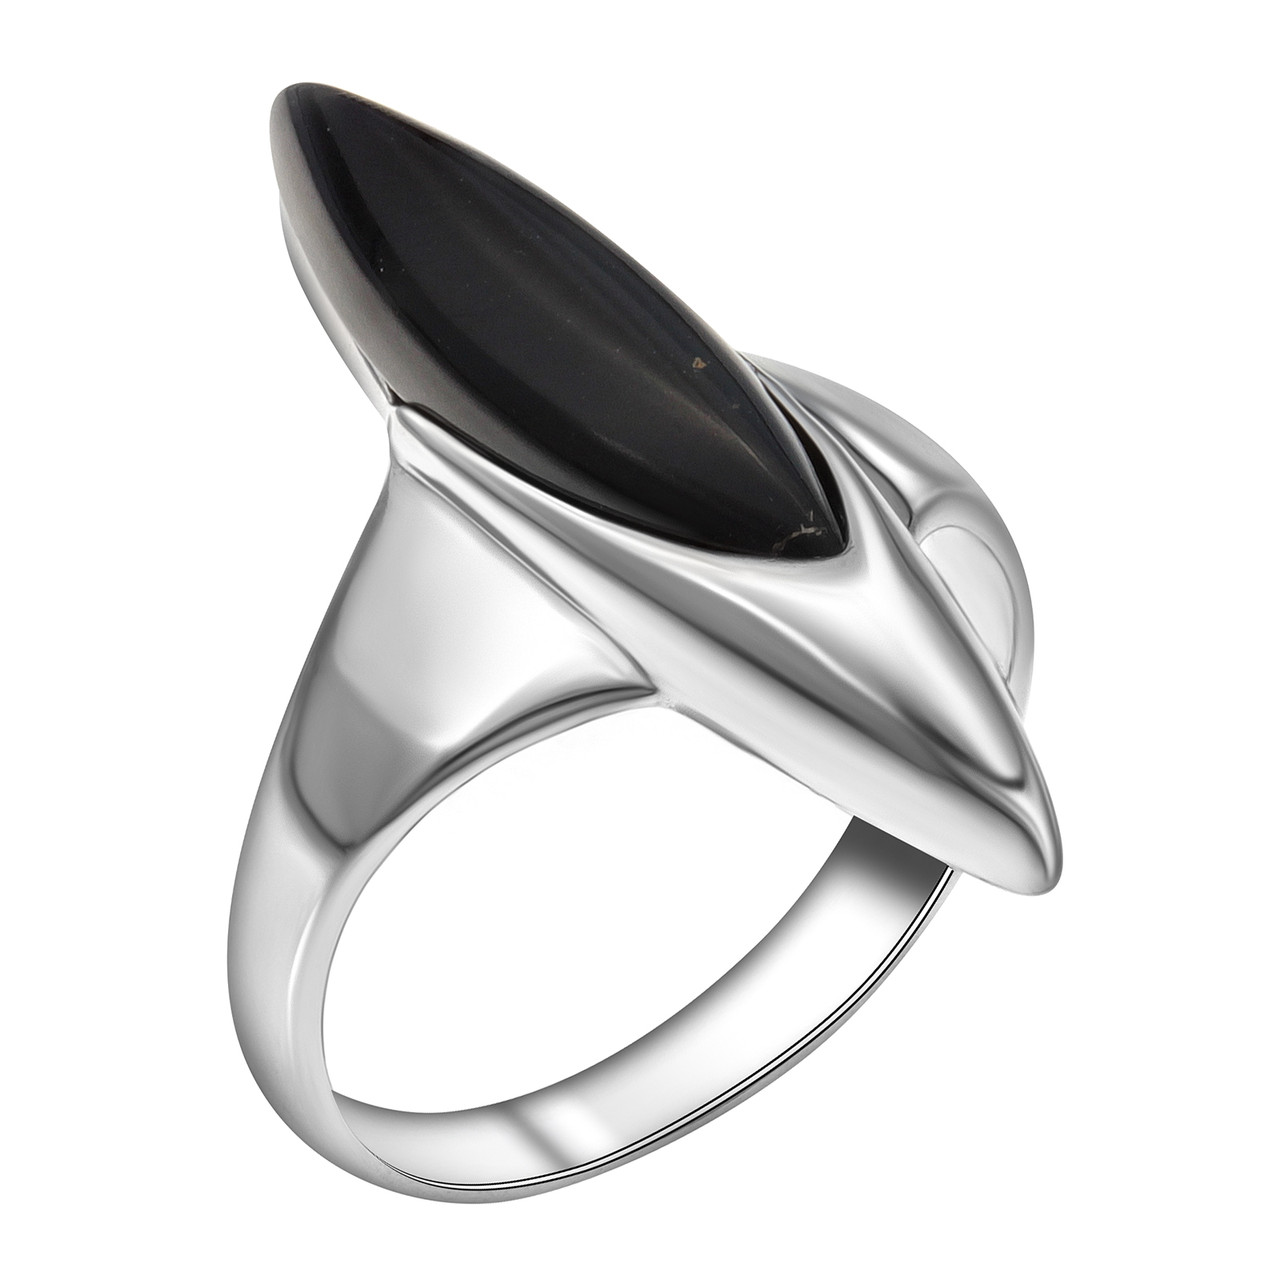 Серебряное кольцо с агатом чёрным  920LB1313aa покрыто  родием